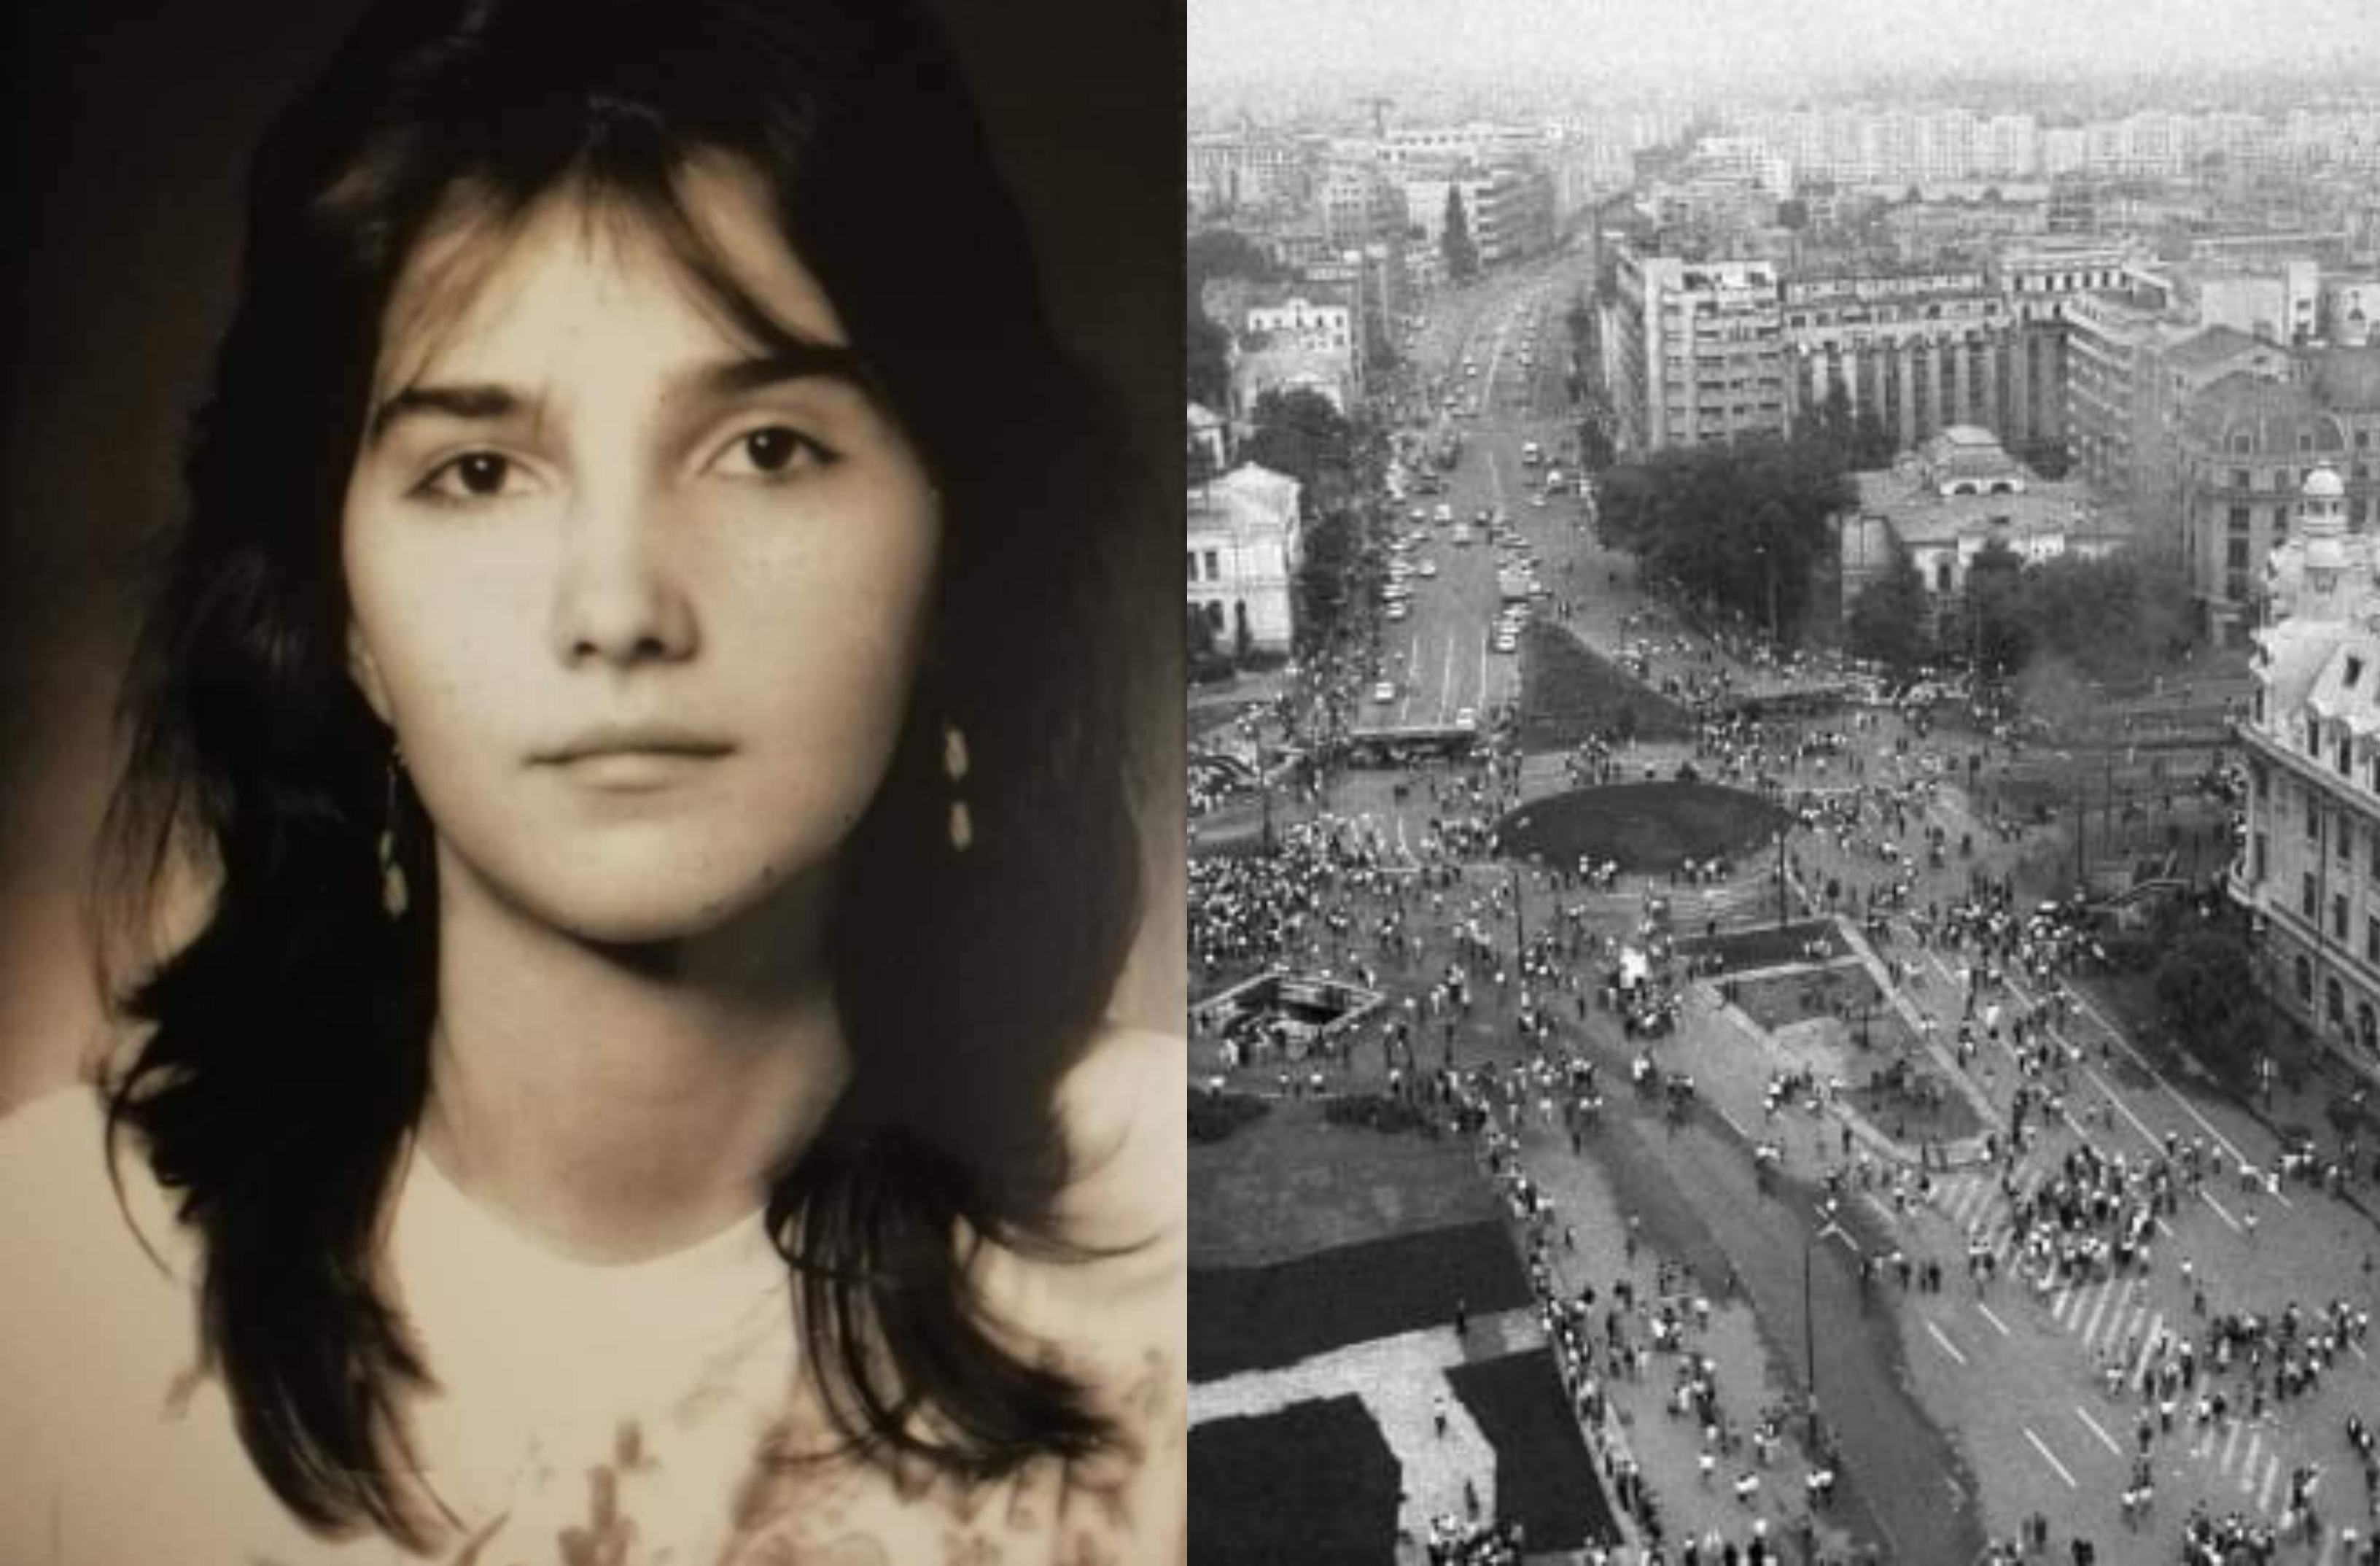 Povestea Victoriei Patrascu, studenta torturata la mineriada din iunie 1990: „Au tarat-o de par, ca pe un animal sacrificat”